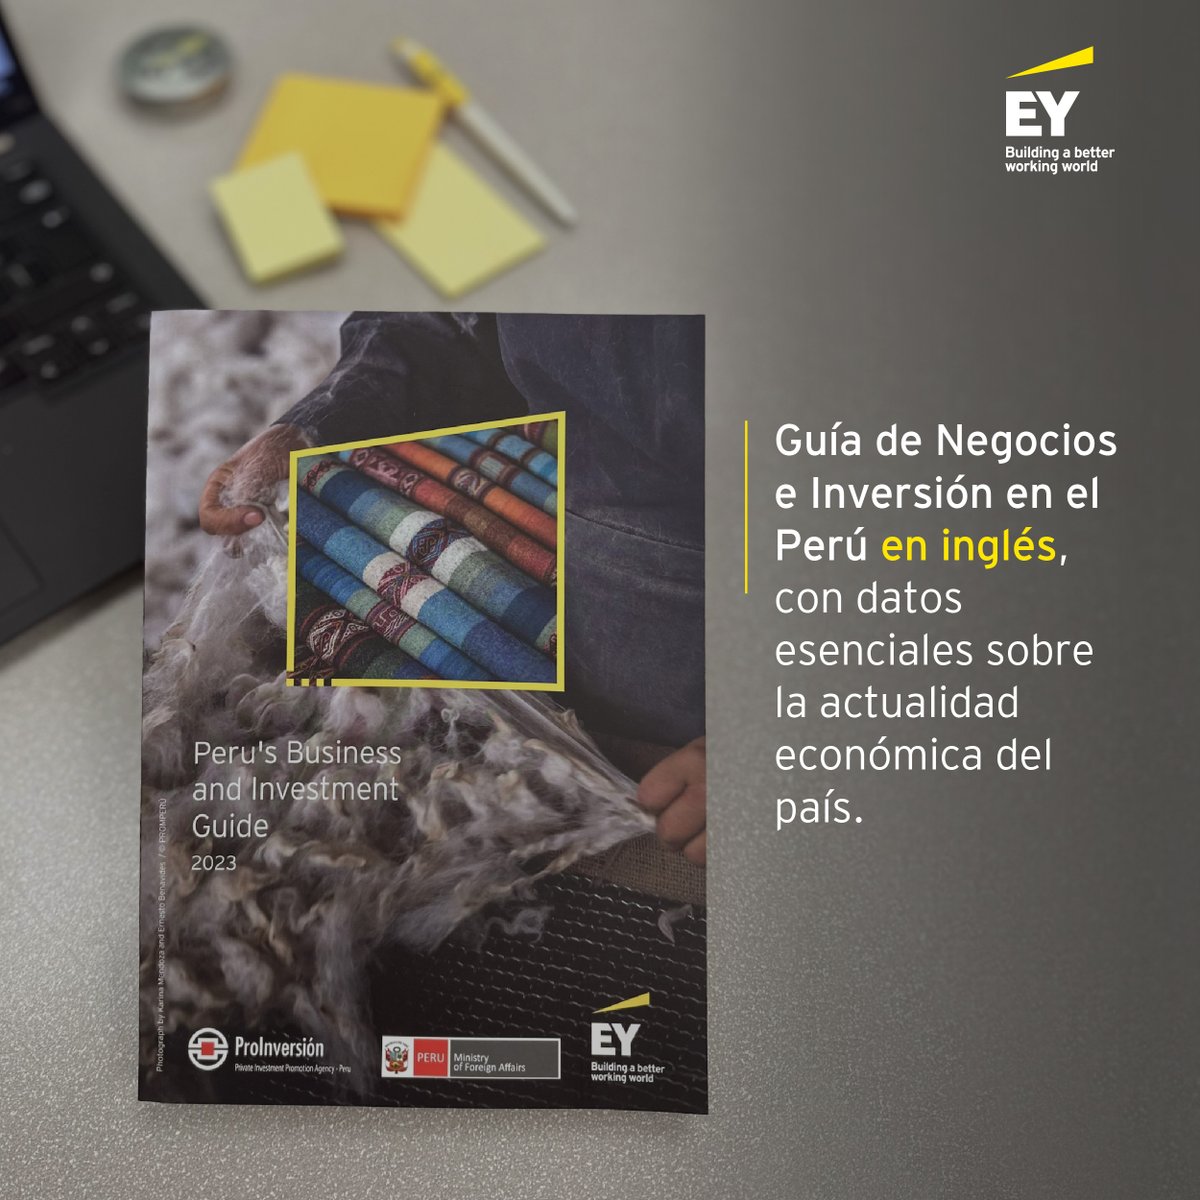 Presentamos la Guía de Negocios e Inversión en el Perú 2023 en idioma inglés, que destaca los principales aspectos tributarios, legales, laborales y de constitución de empresas del país que hacen del Perú un país muy atractivo para la inversión extranjera. go.ey.com/47Dx0UZ